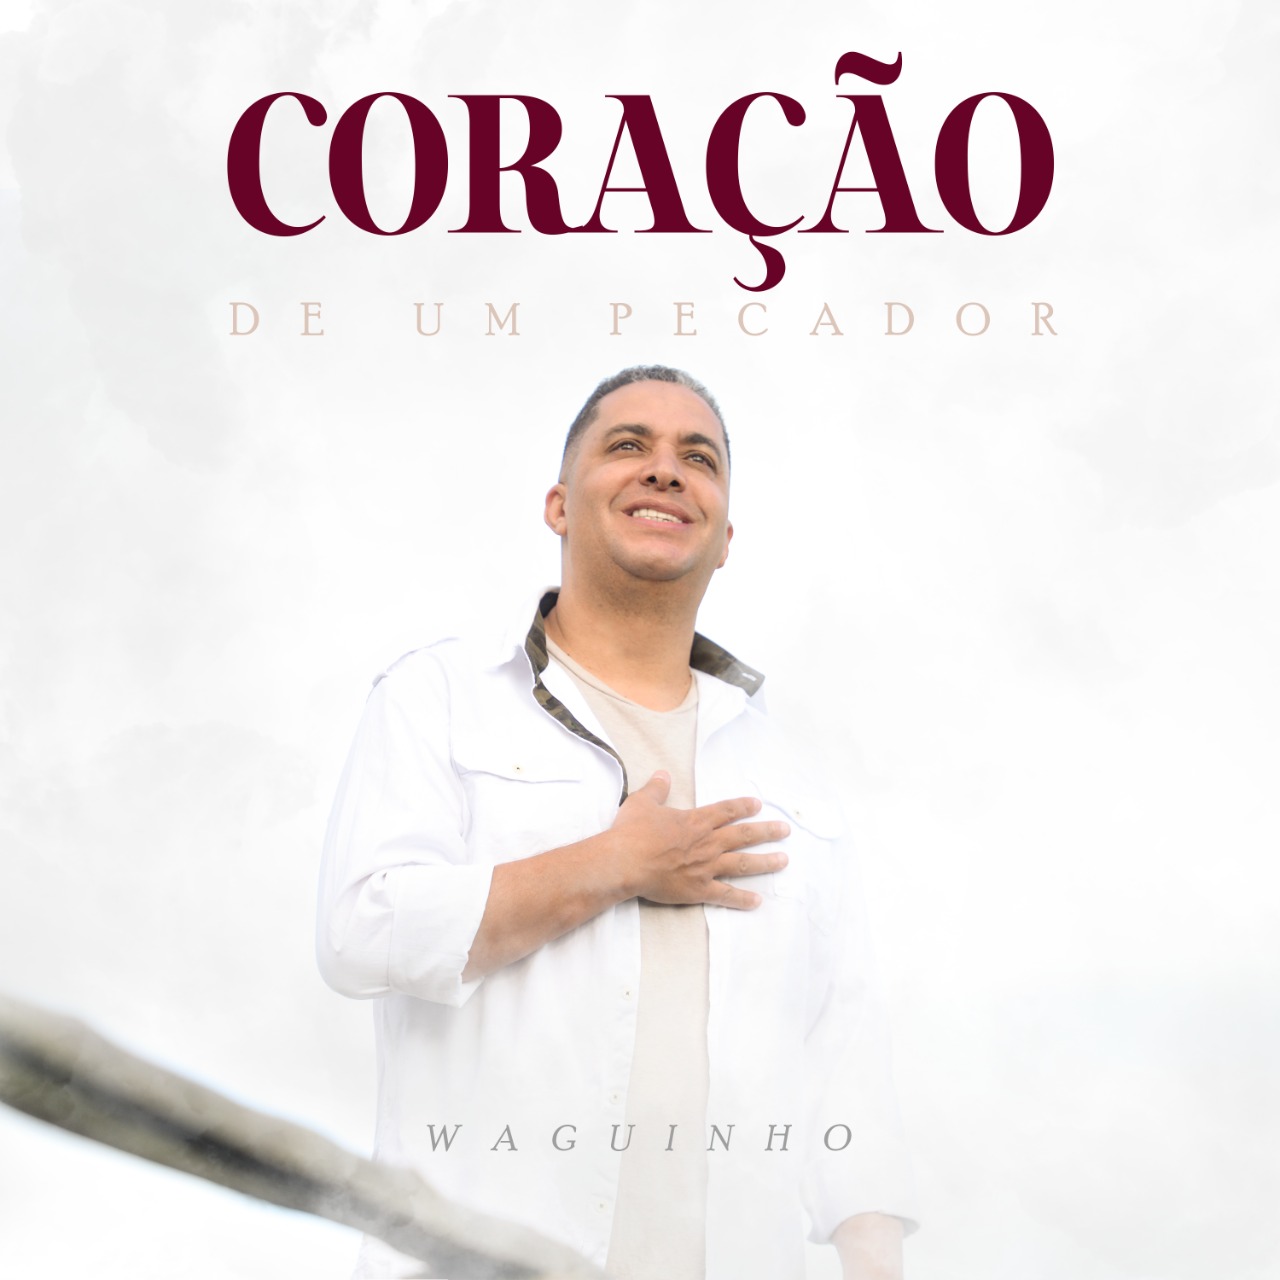 Waguinho estreia na Central Gospel Music com o single autoral “Coração de um Pecador”